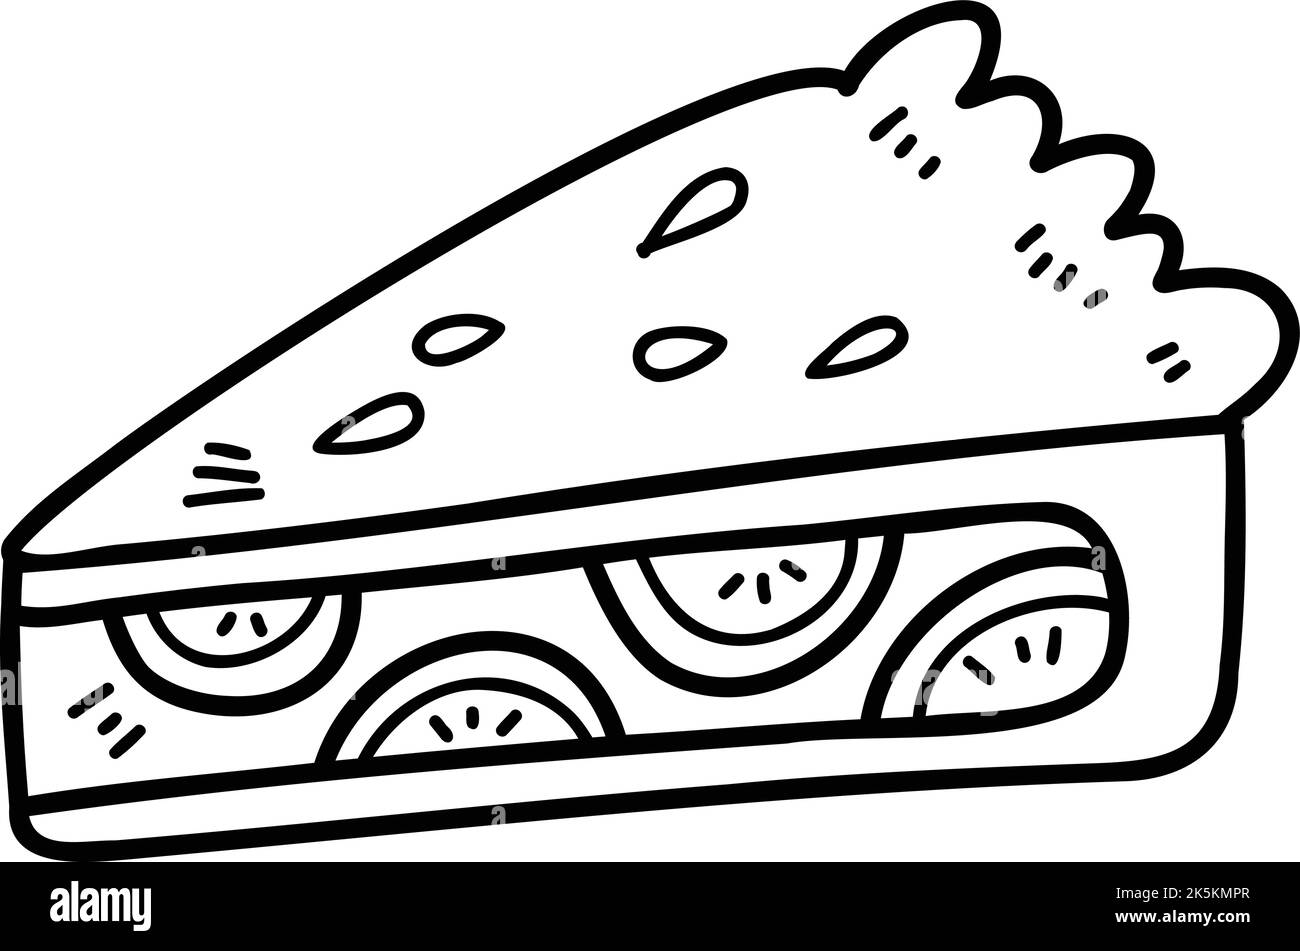 Handgezeichnete, in Scheiben geschnittene Kuchendarstellung isoliert auf dem Hintergrund Stock Vektor